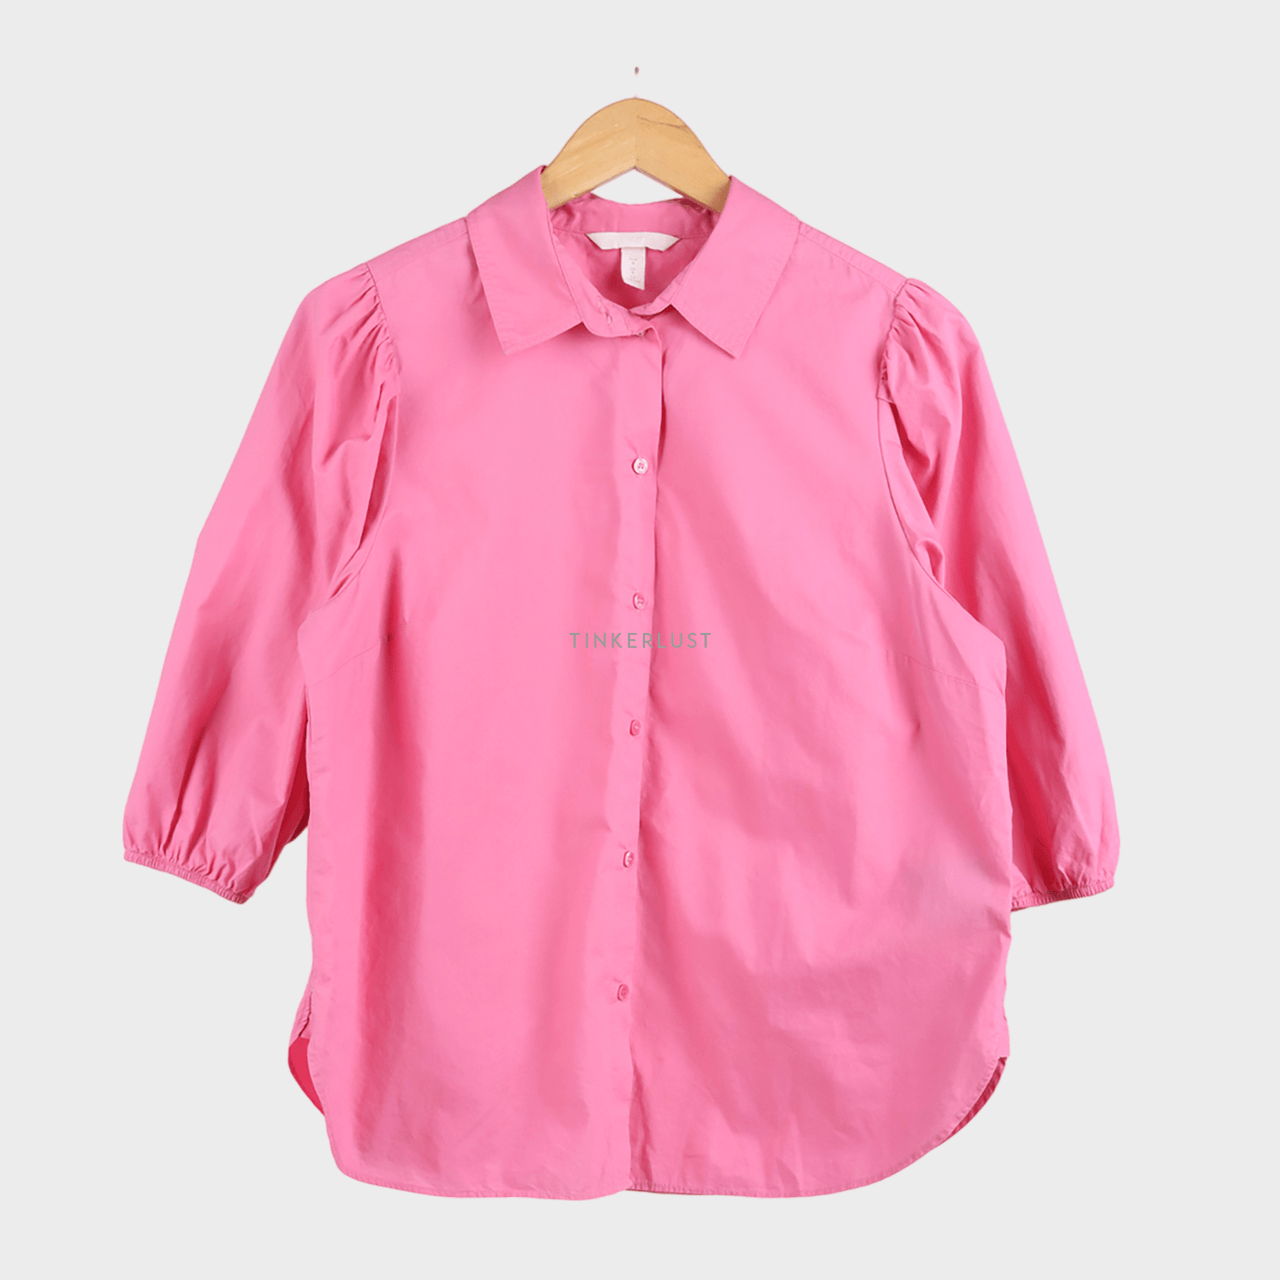 H&M Pink Shirt